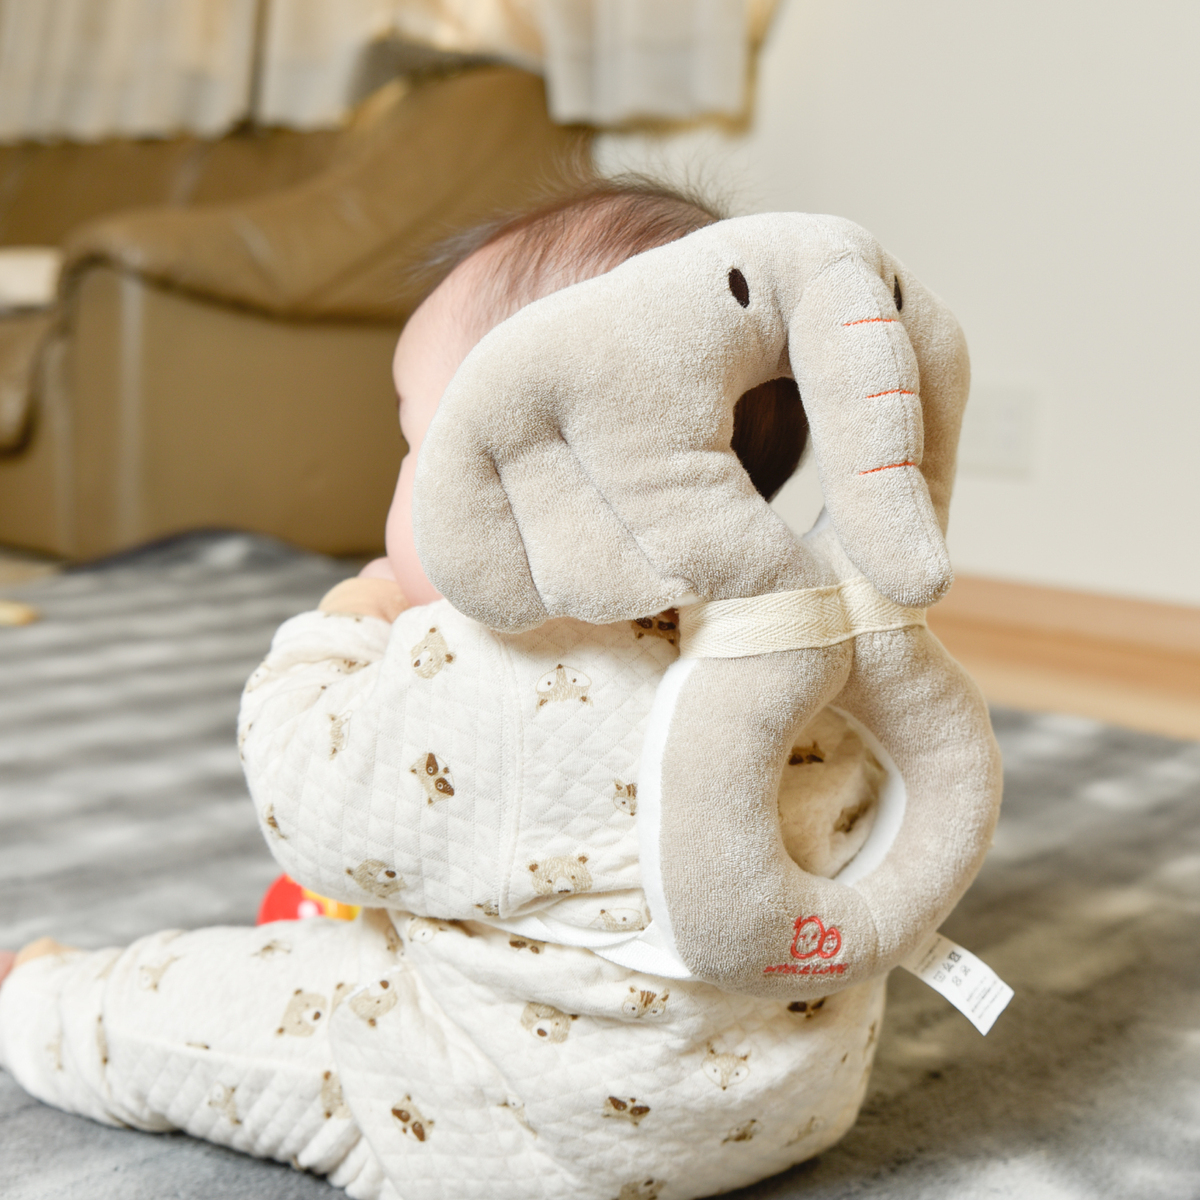 赤ちゃんの頭 背中 側頭部も優しくガード ゾウのごっつん防止リュック が発売 マイナビ子育て